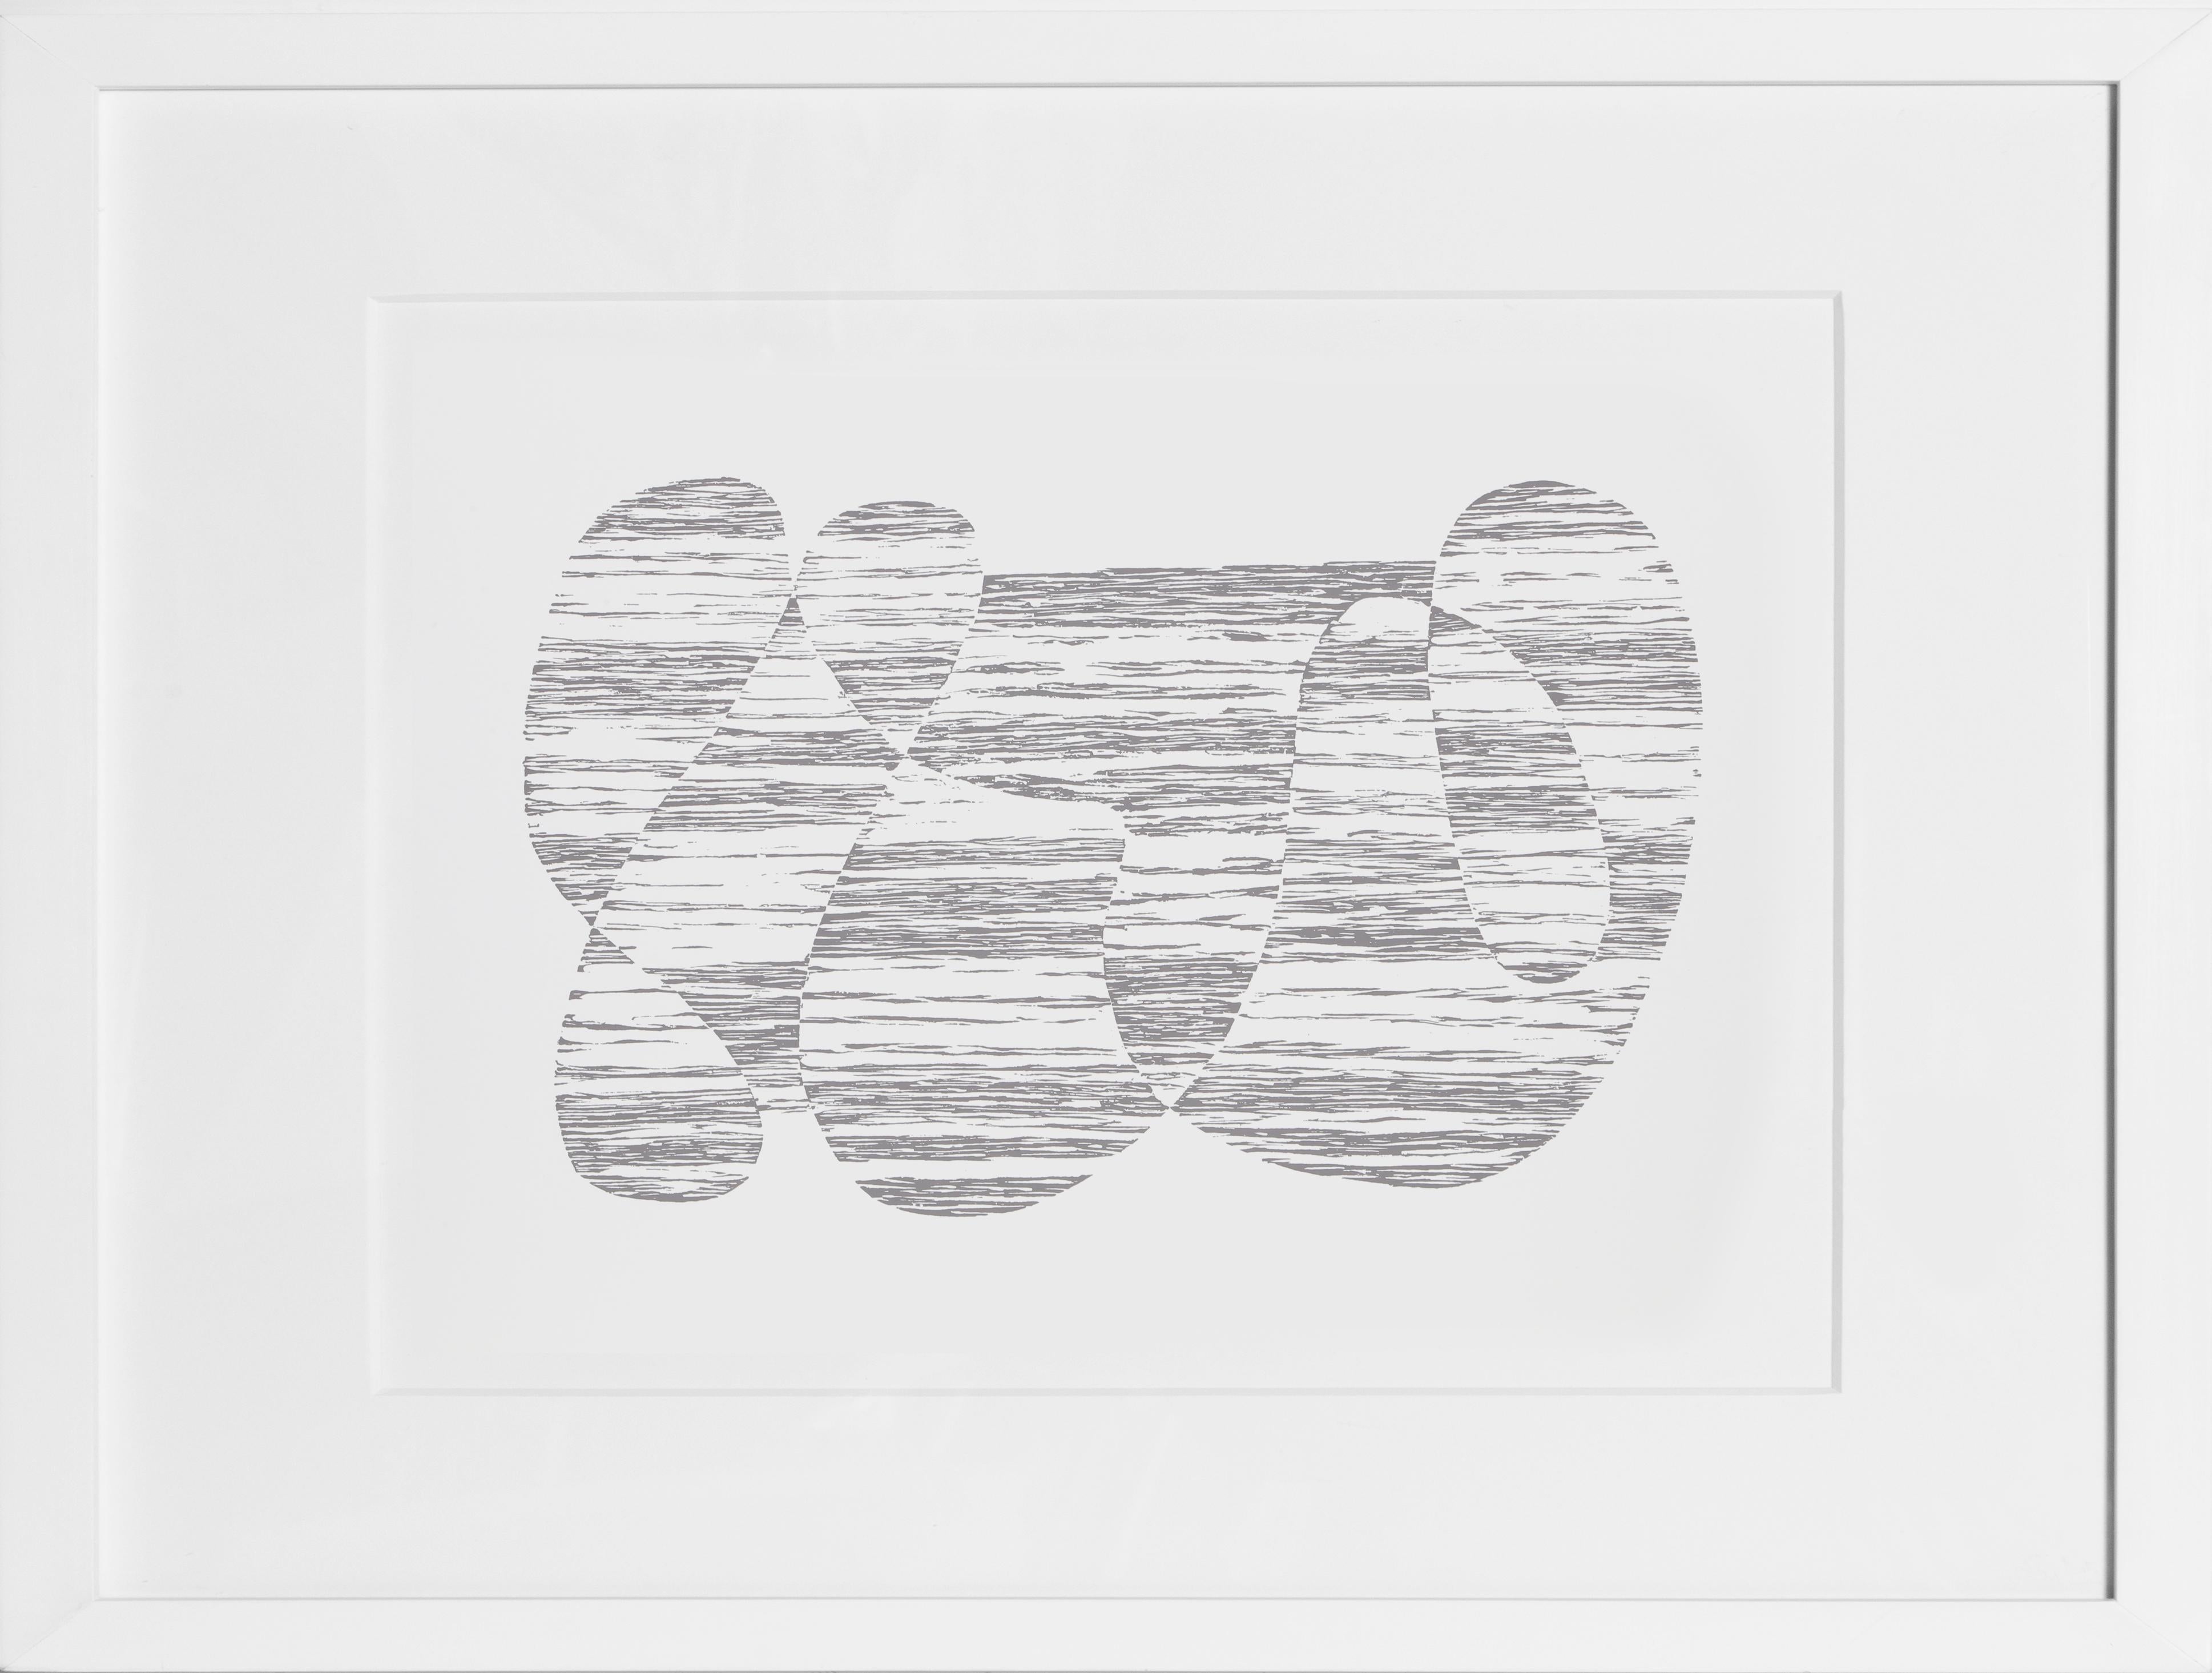 Aus der Mappe "Formulierung: Articulation" von Josef Albers aus dem Jahr 1972. Diese monumentale Serie besteht aus 127 Original-Siebdrucken, die einen endgültigen Überblick über die wichtigsten Farb- und Formtheorien des Künstlers geben.  Eine Kopie